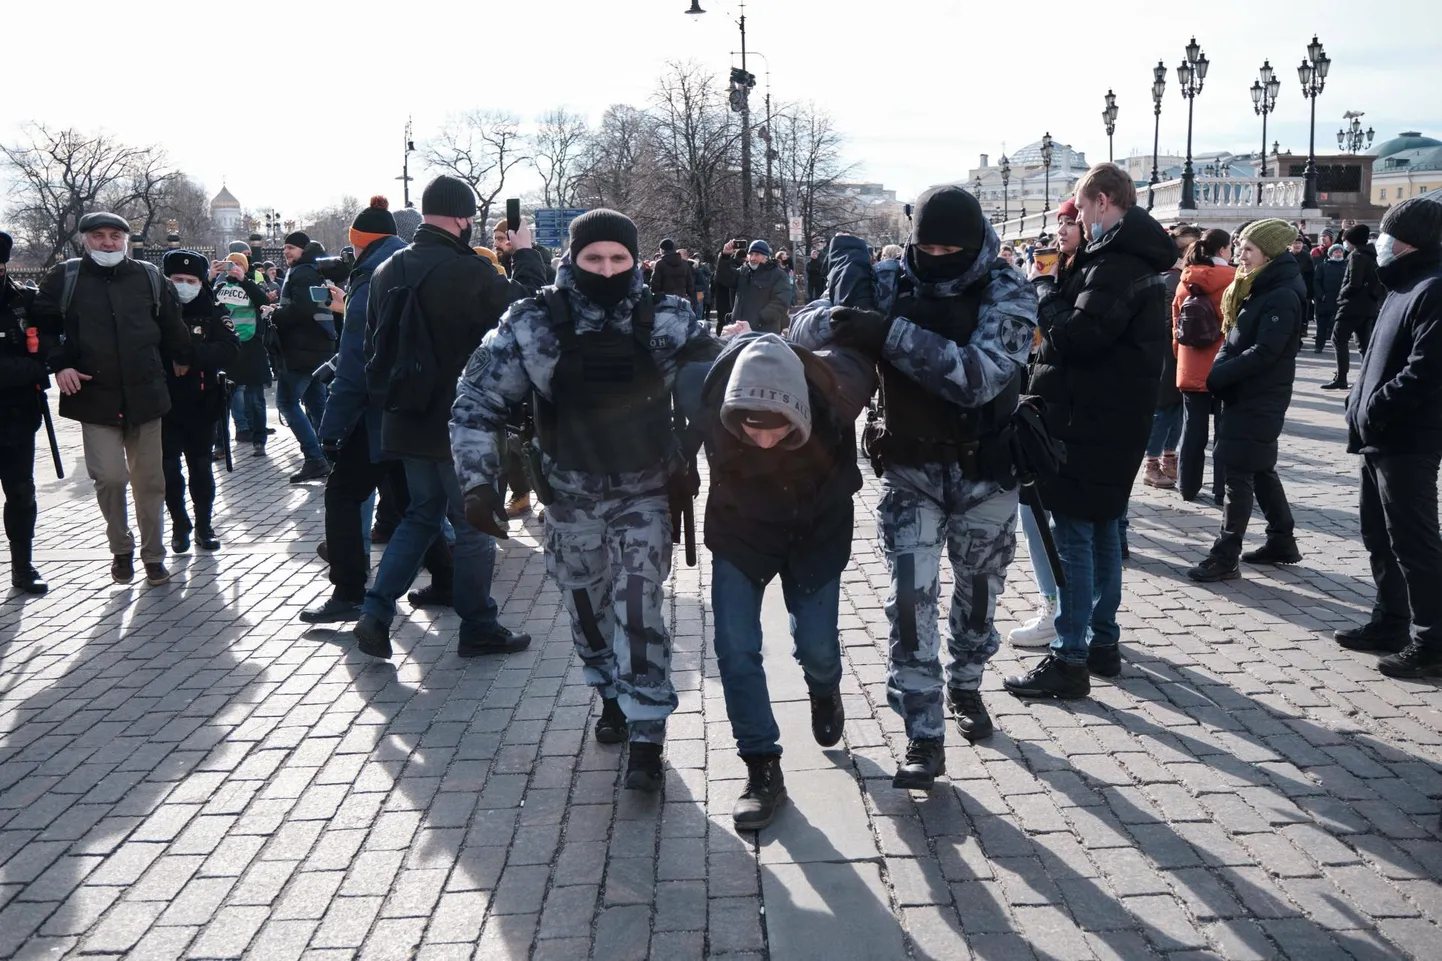 Enam kui 2500 venemaalast vahistati 6. märtsil Ukraina sõja vastastel protestidel 49 linnas üle Venemaa. Moskvas kogunesid protestijad kesklinnas, Kremli lähedal, politsei ajas meeleavalduse jõuga laiali.